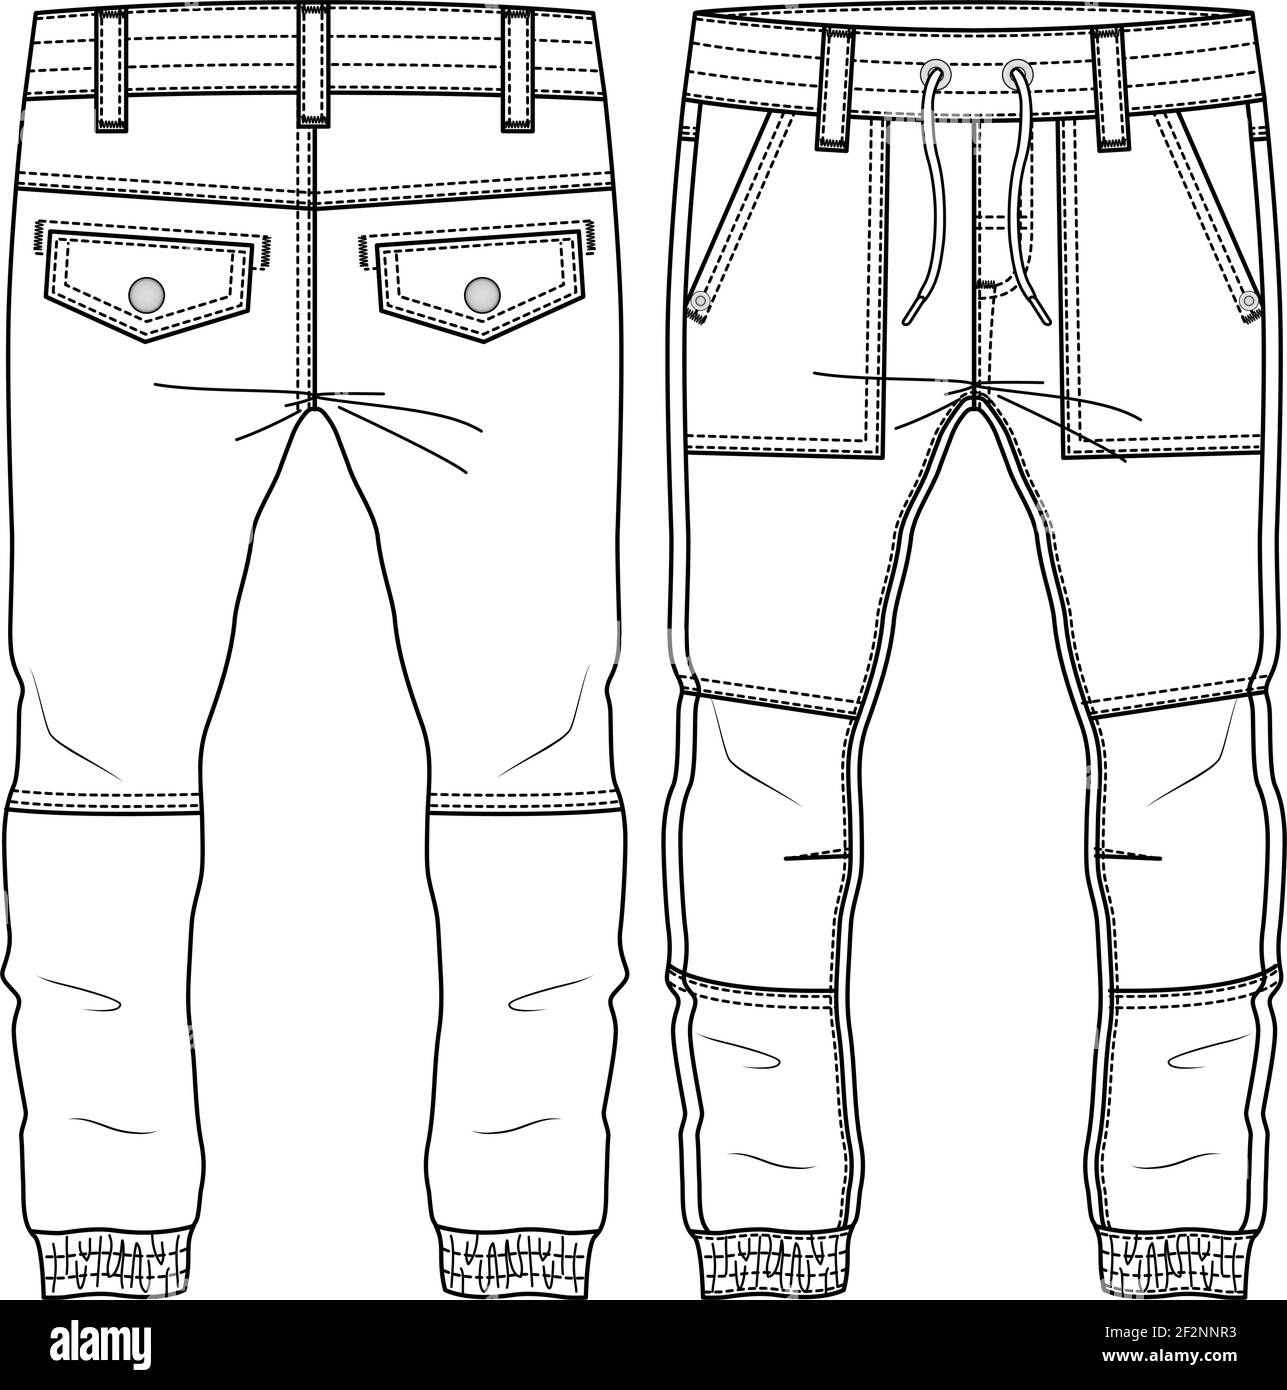 Männer Jungen Hose Mode flach Skizze Vorlage. Technische Mode Illustration. Gewobenes CAD Stock Vektor